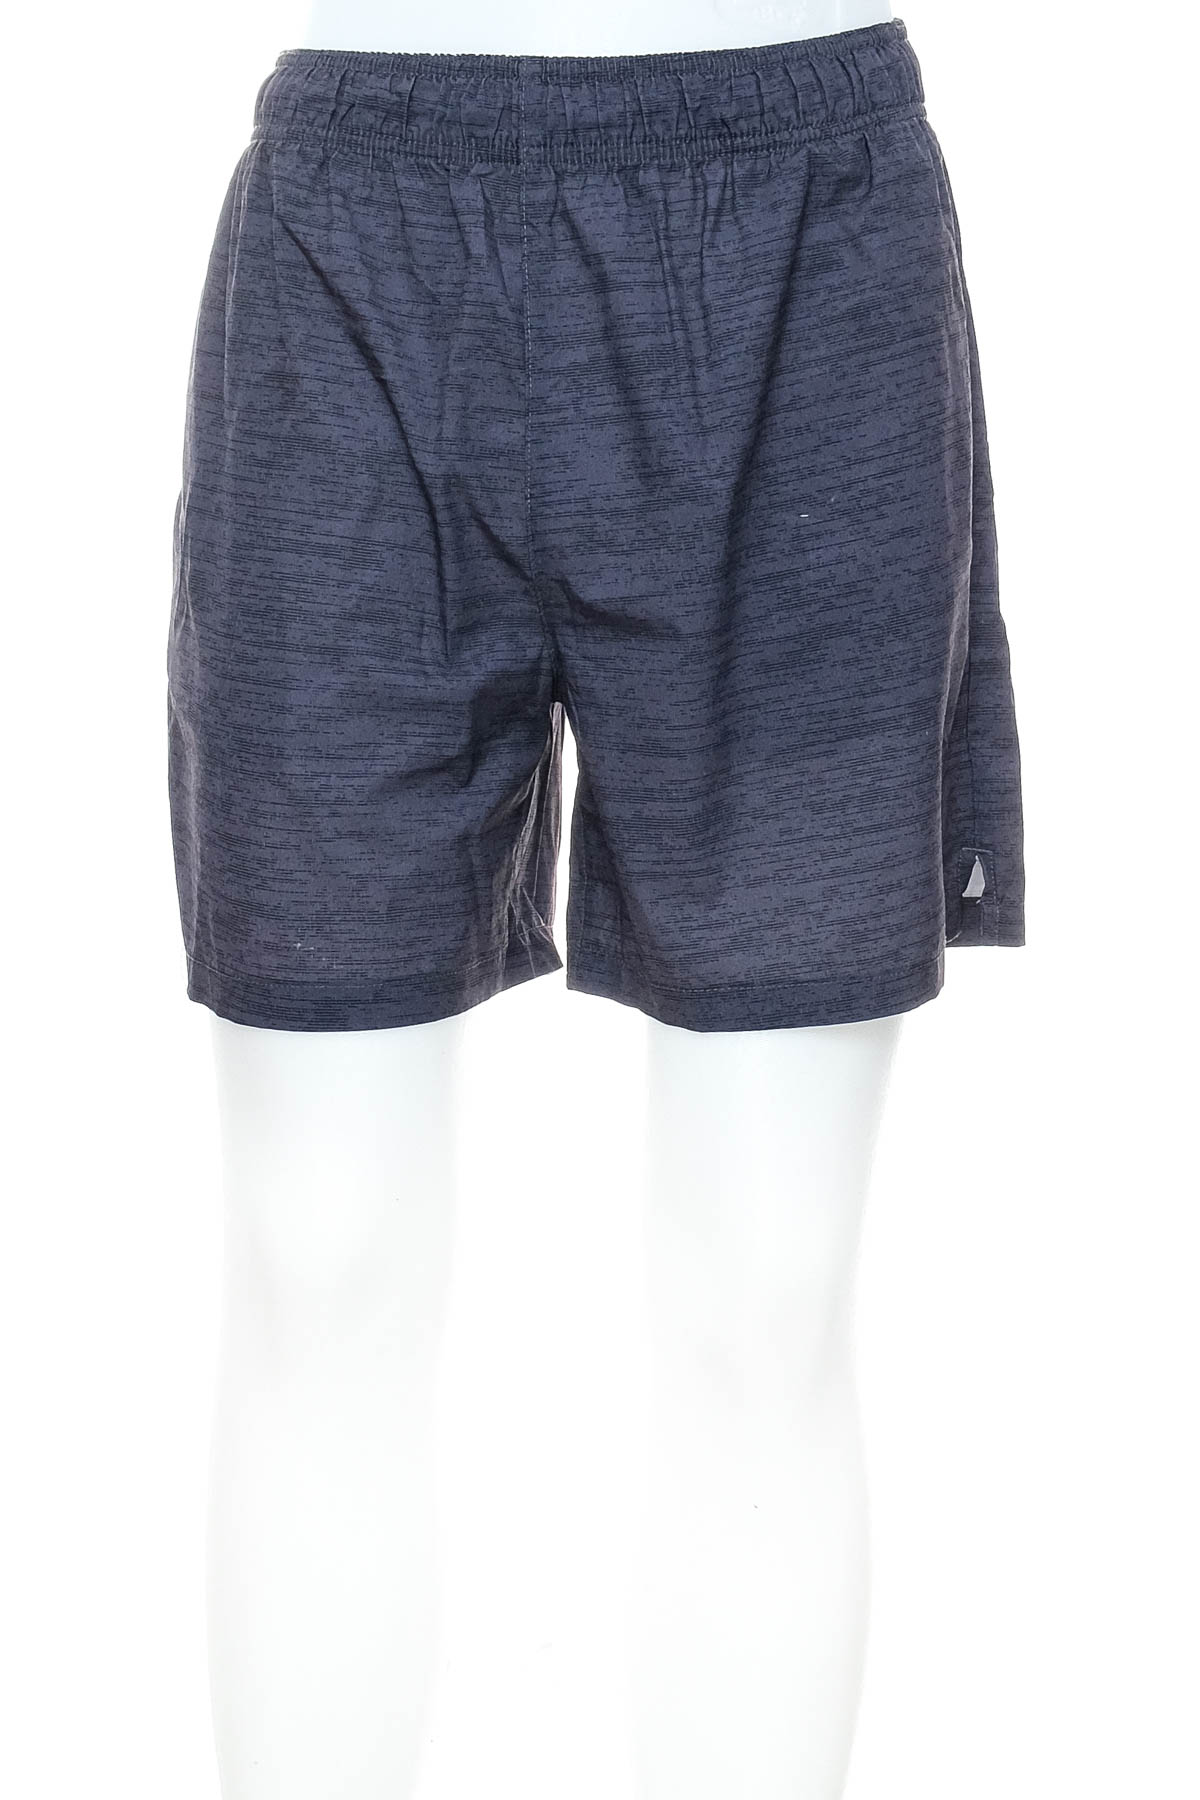 Men's shorts - Active & Co - 0